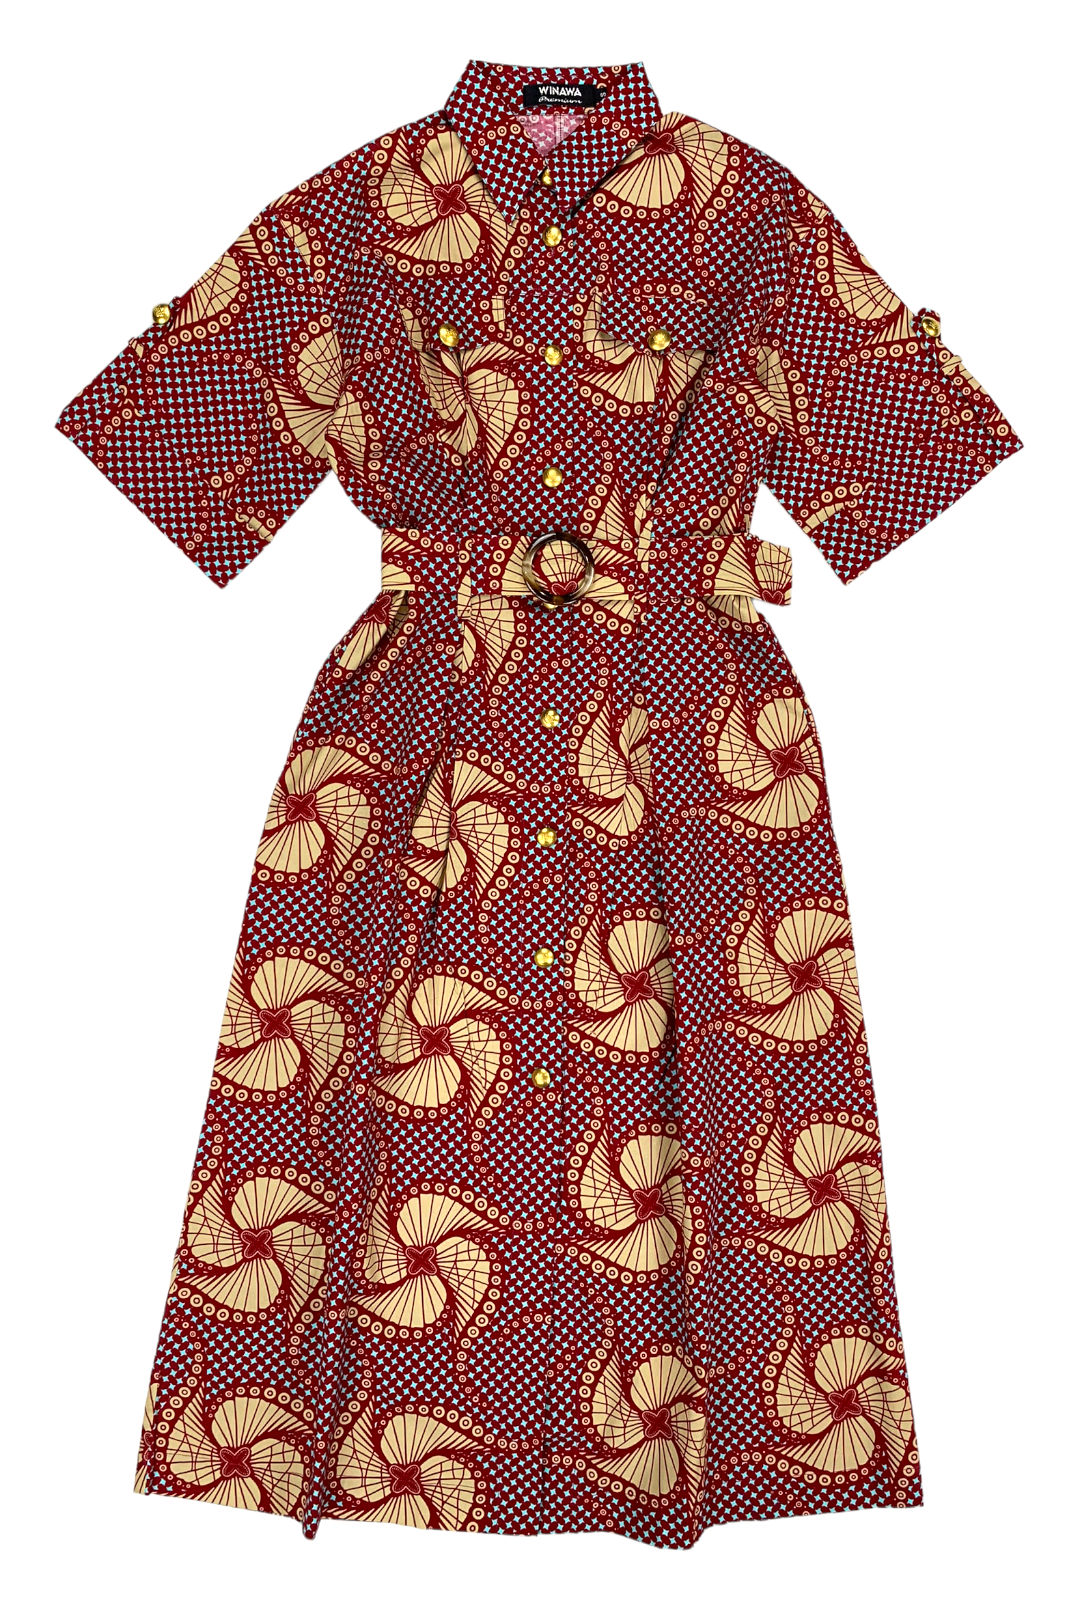 AFRICAN DRESS SHIRT